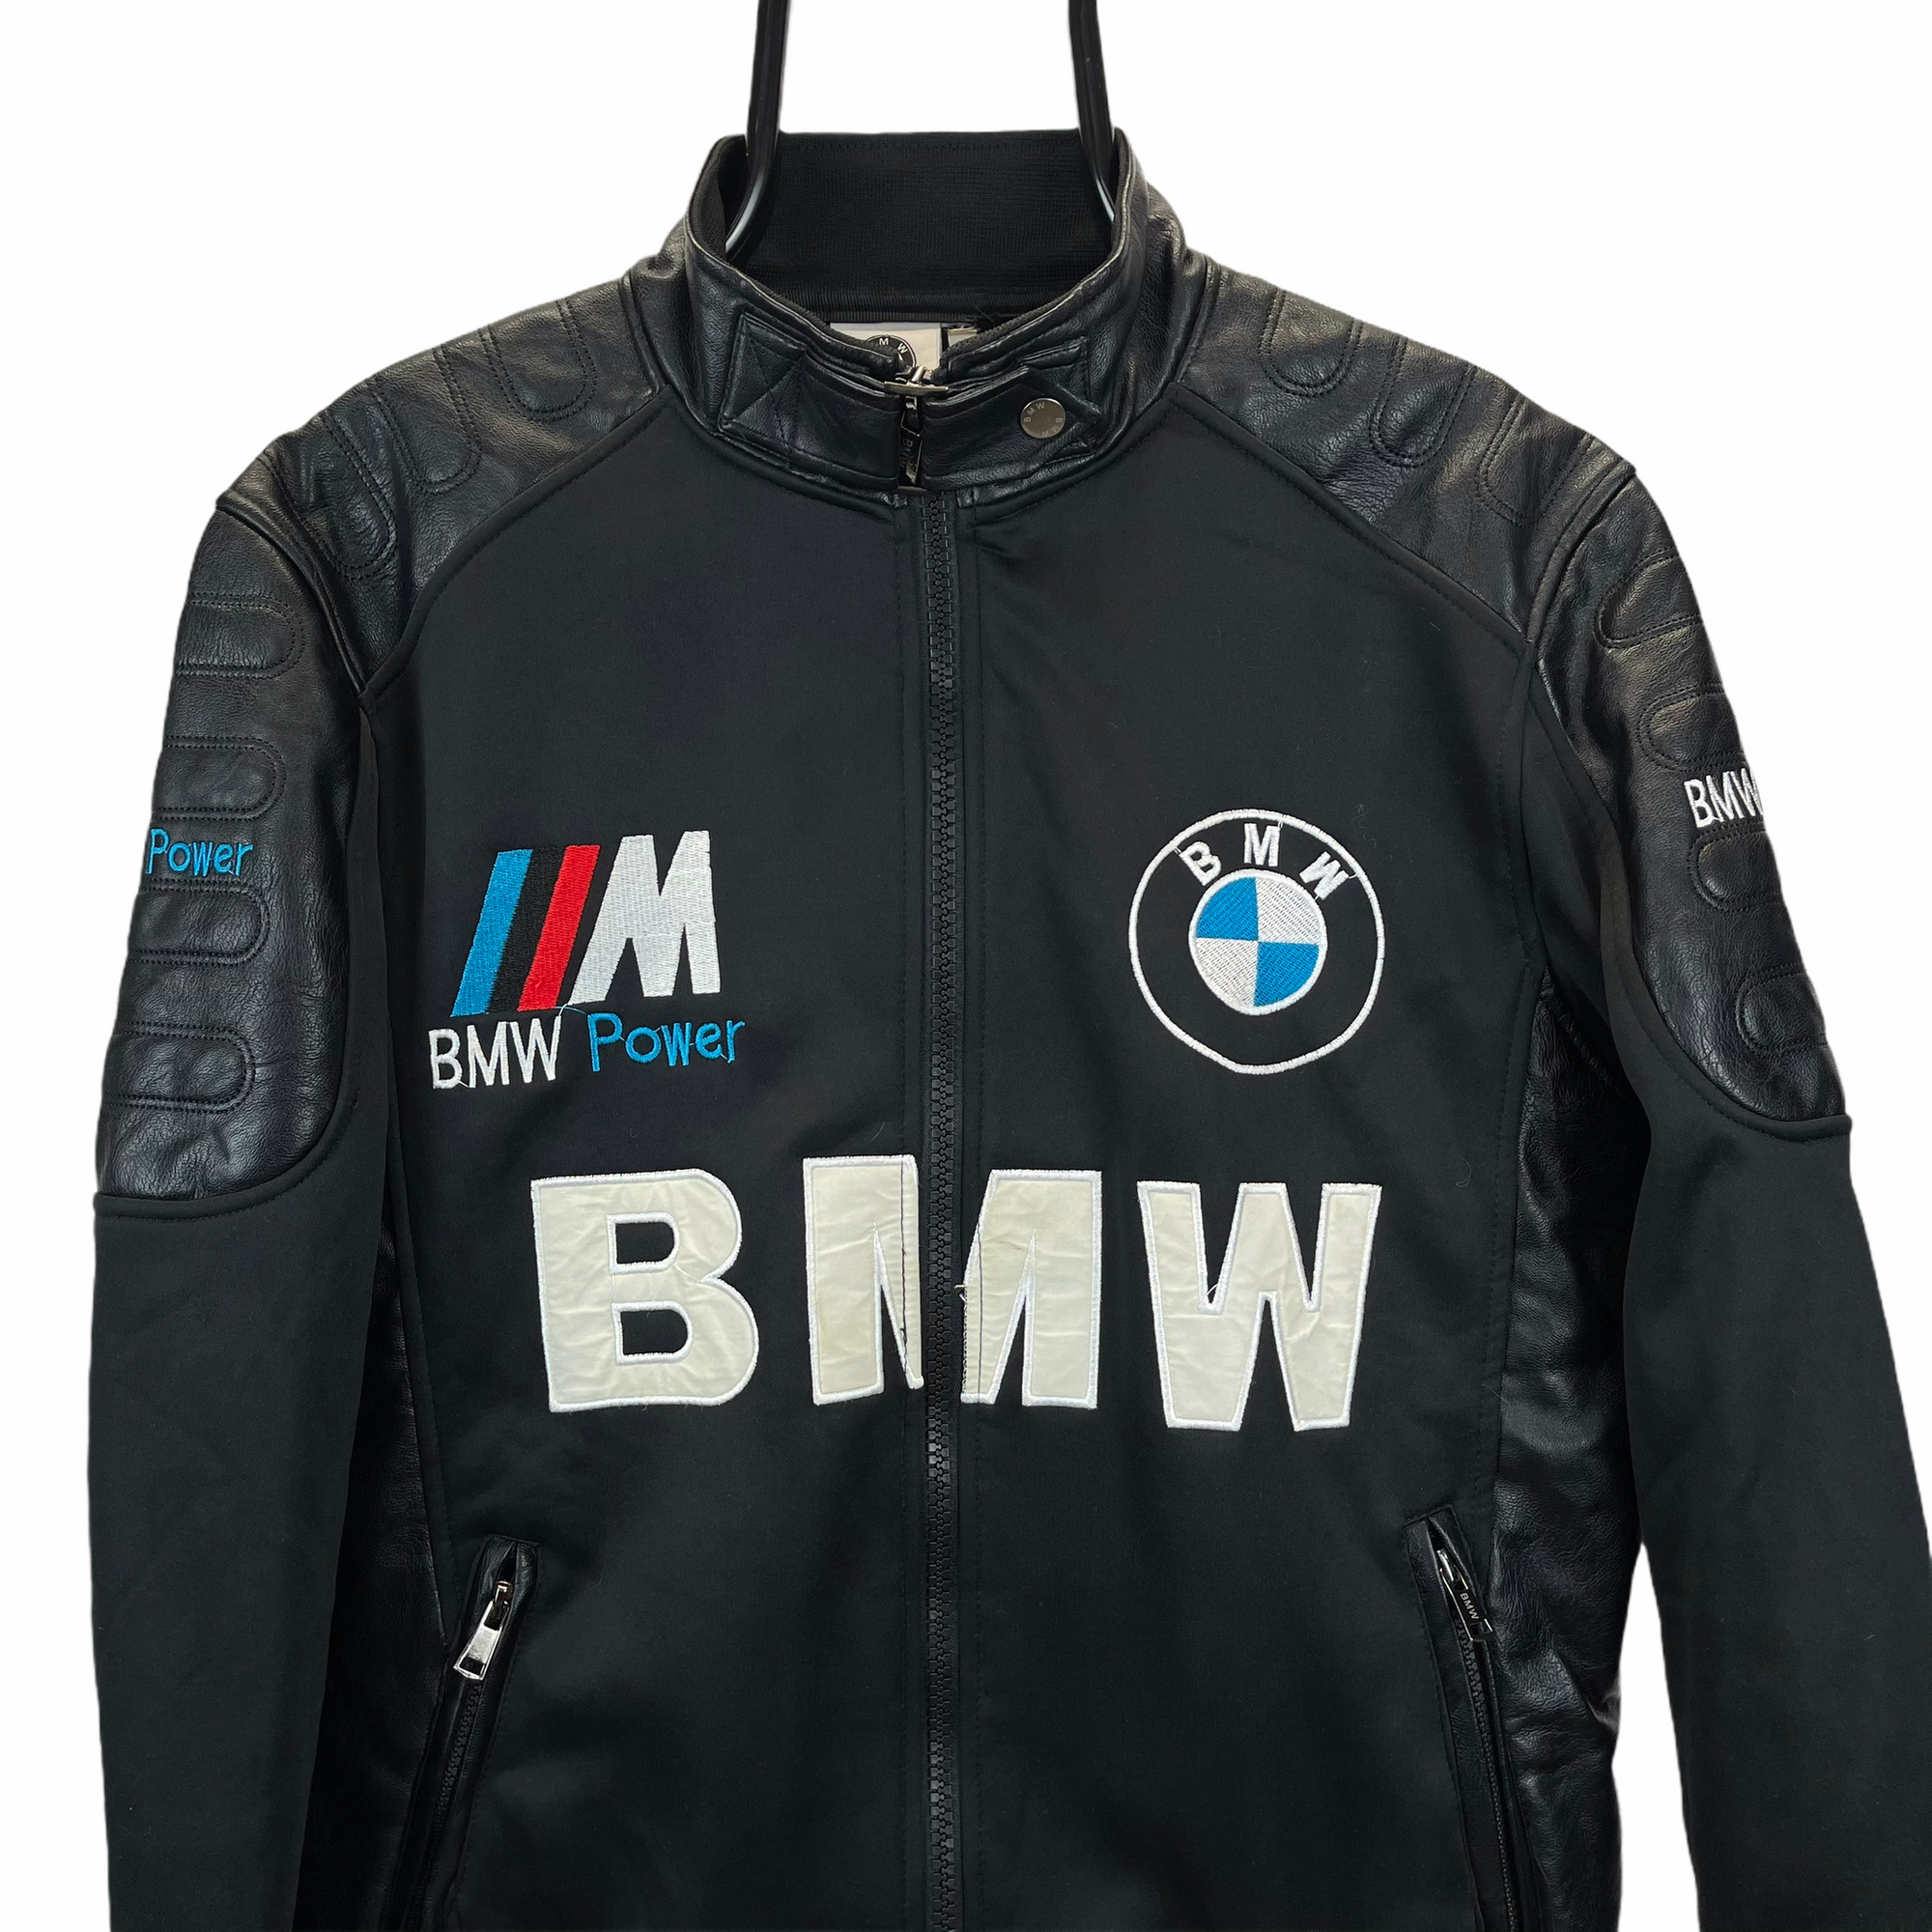 VINTAGE BMW RACING JACKET - MEN'S MEDIUM/WOMEN'S LARGE